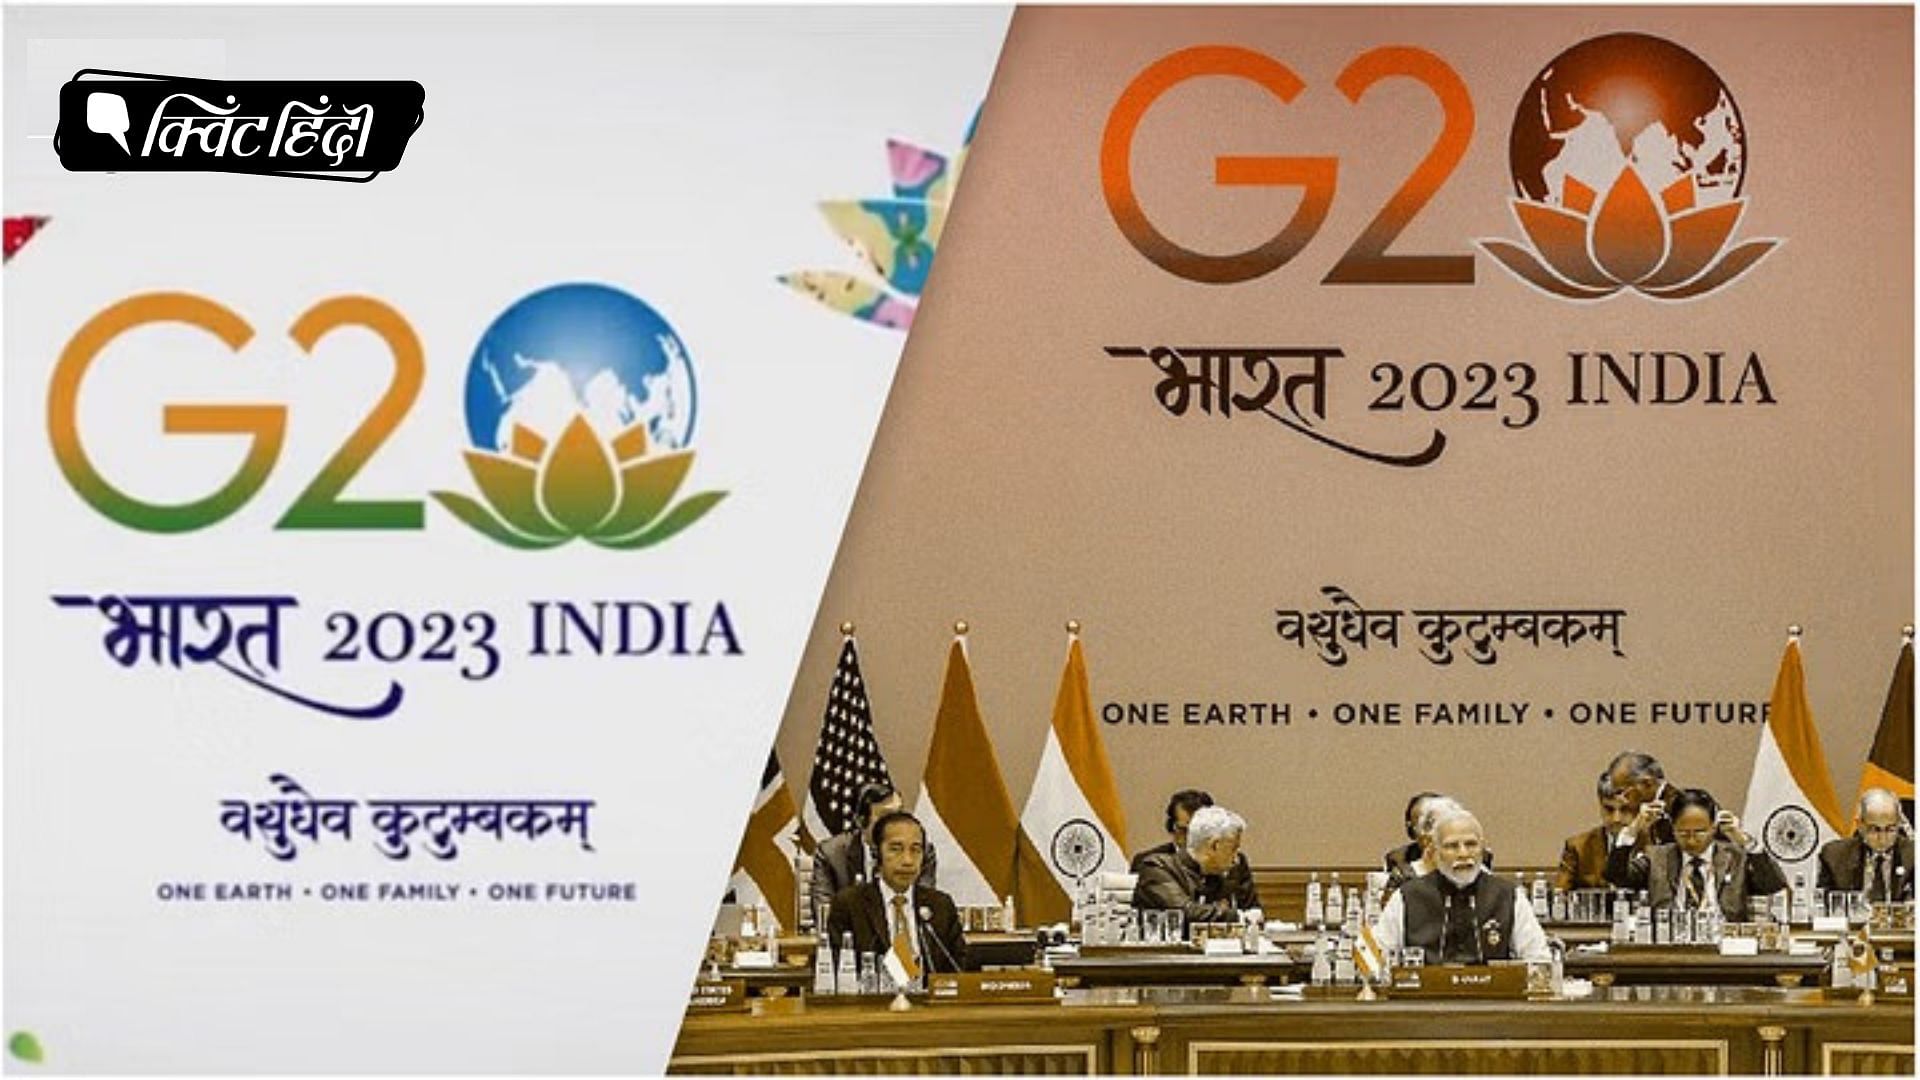 <div class="paragraphs"><p>सही समय पर सही कदम: G20 से भारत को शानदार बढ़त</p></div>